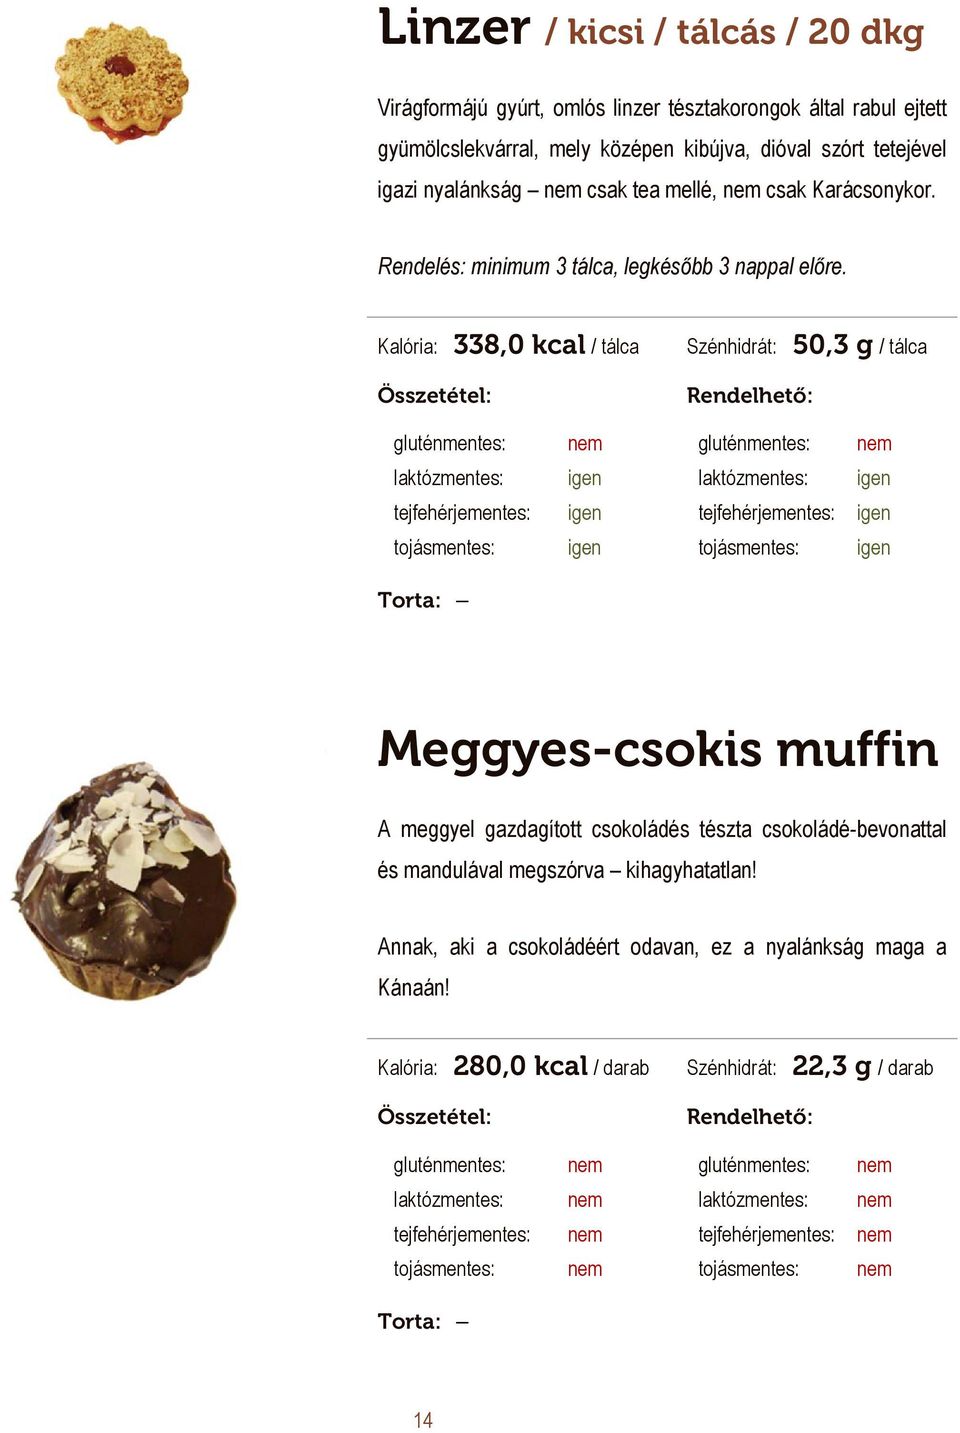 Kalória: 338,0 kcal / tálca Szénhidrát: 50,3 g / tálca 900 Ft / tálca Meggyes-csokis muffin A meggyel gazdagított csokoládés tészta